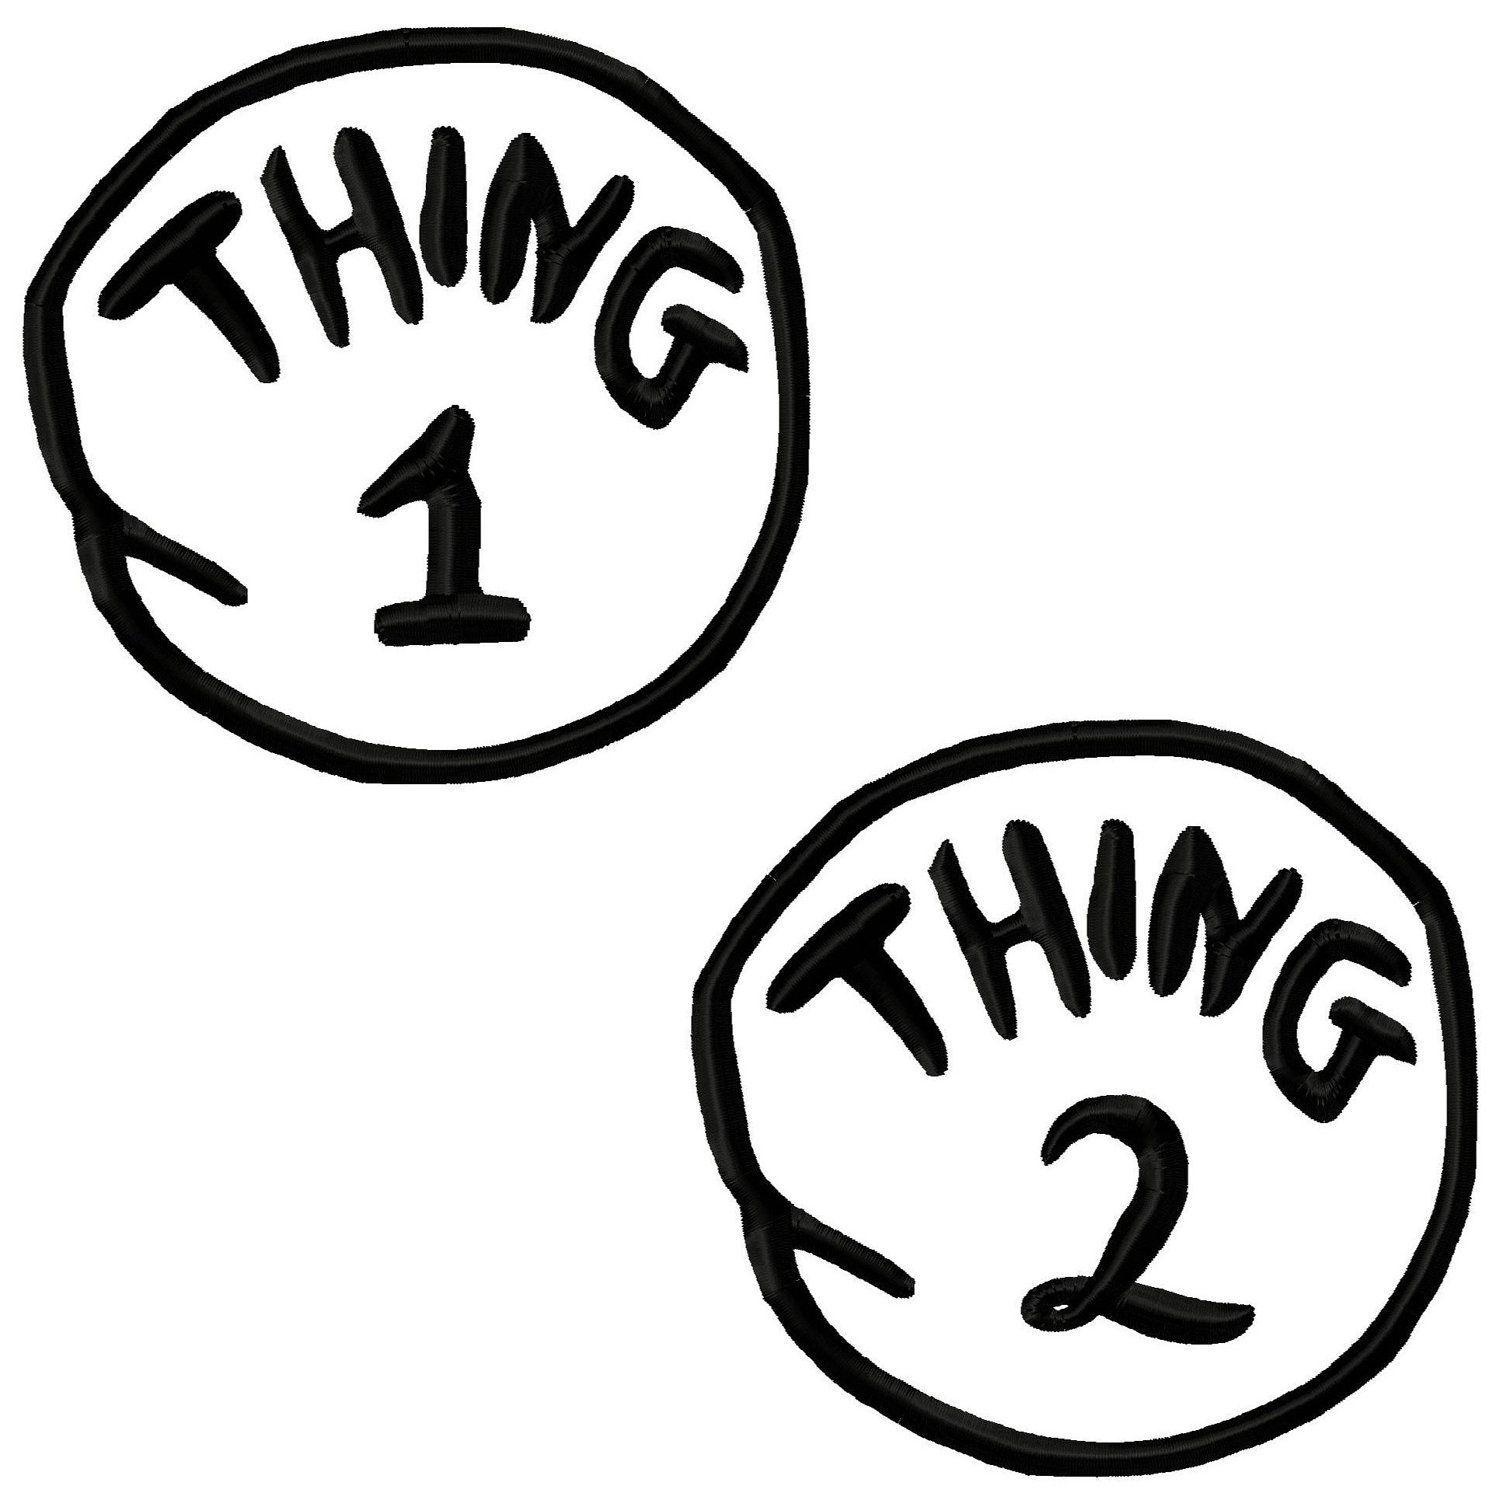 Thing Logo - Printable Thing 1 Logo Digital needlecraft pattern stores ...